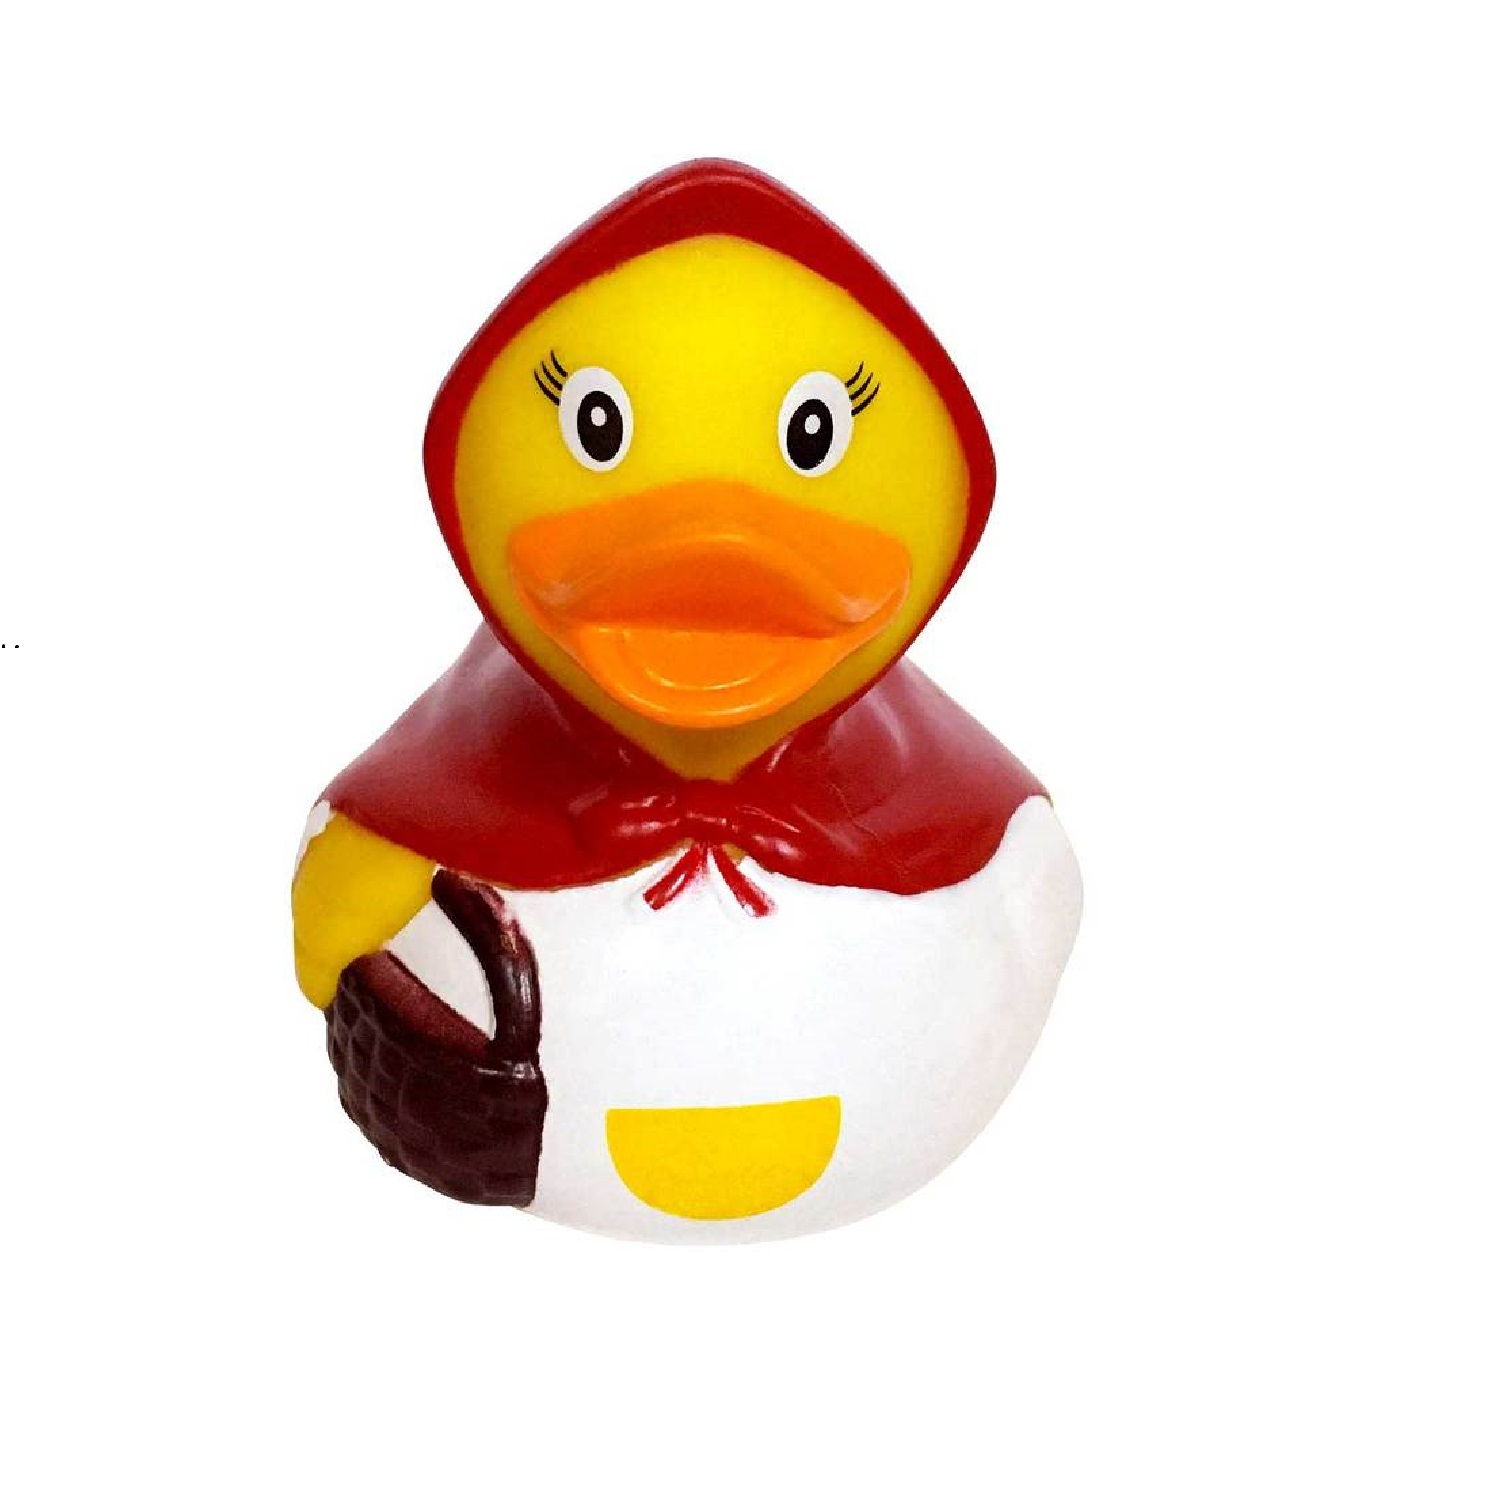 Игрушка Funny ducks для ванной Красная шапочка уточка 1858 - фото 2